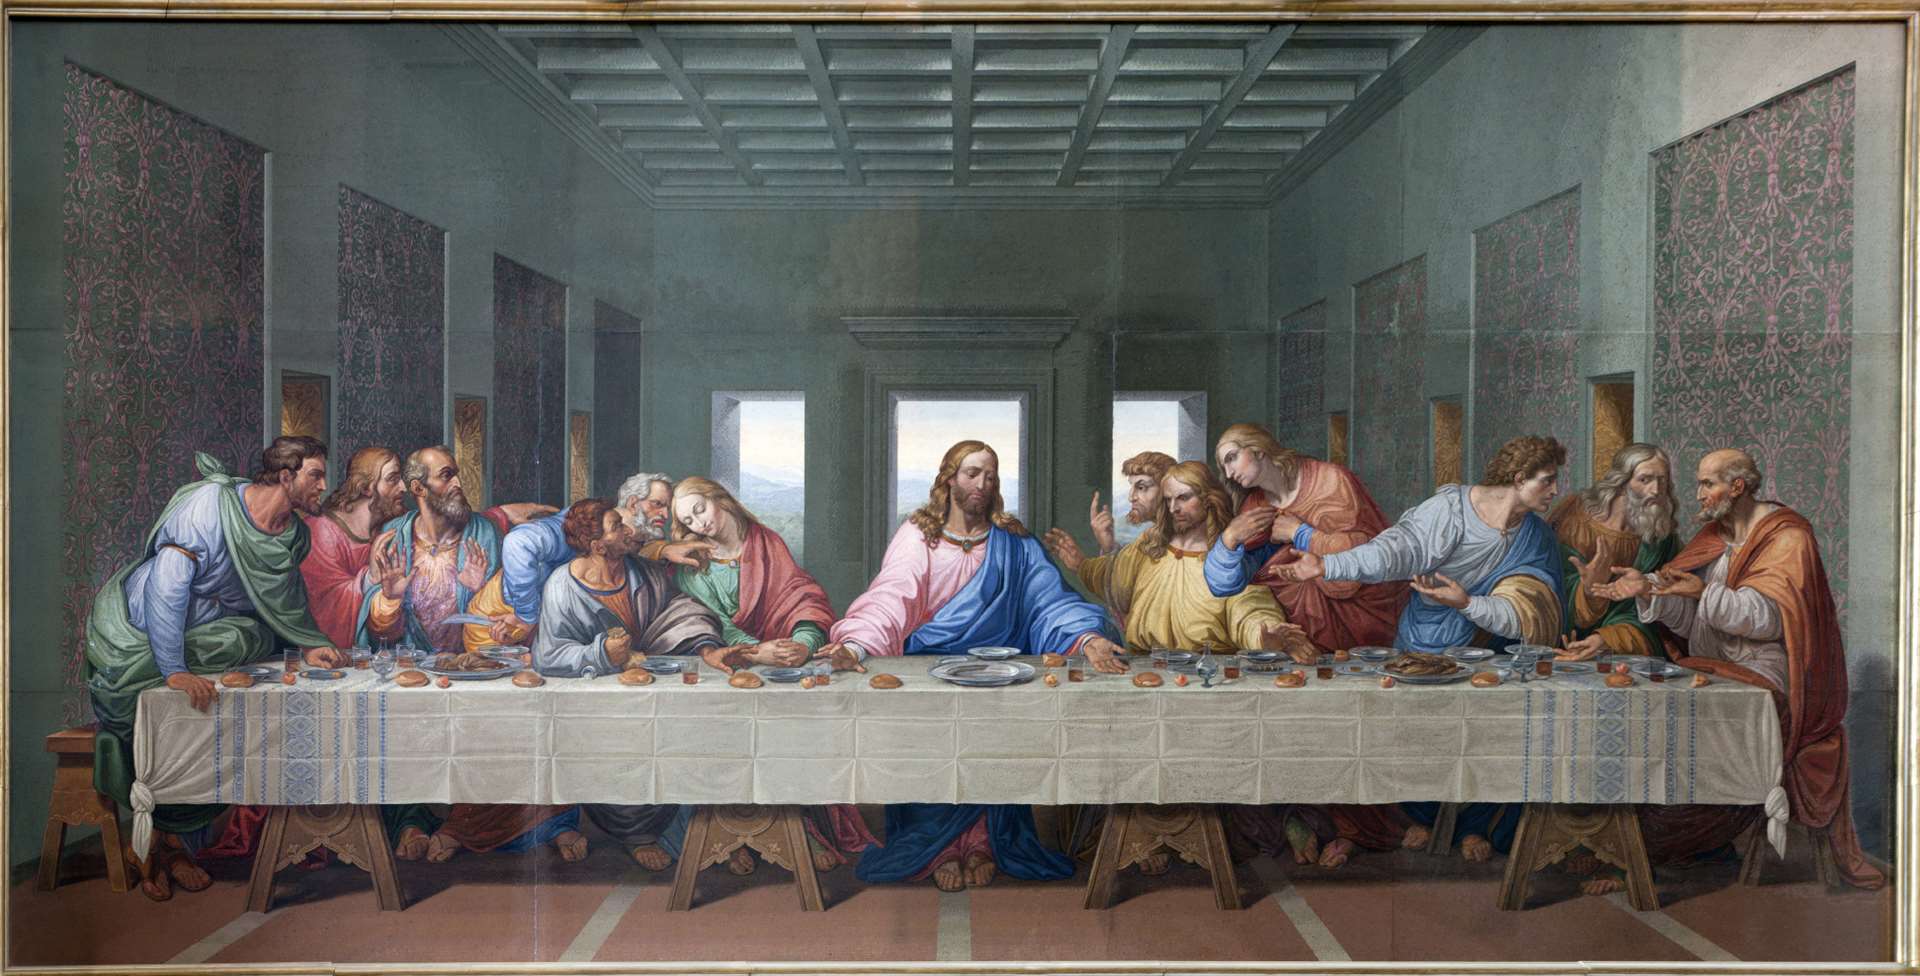 Leonardo da Vinci 'The Last Supper' is housed in the church of Santa Maria delle Grazie in Milan